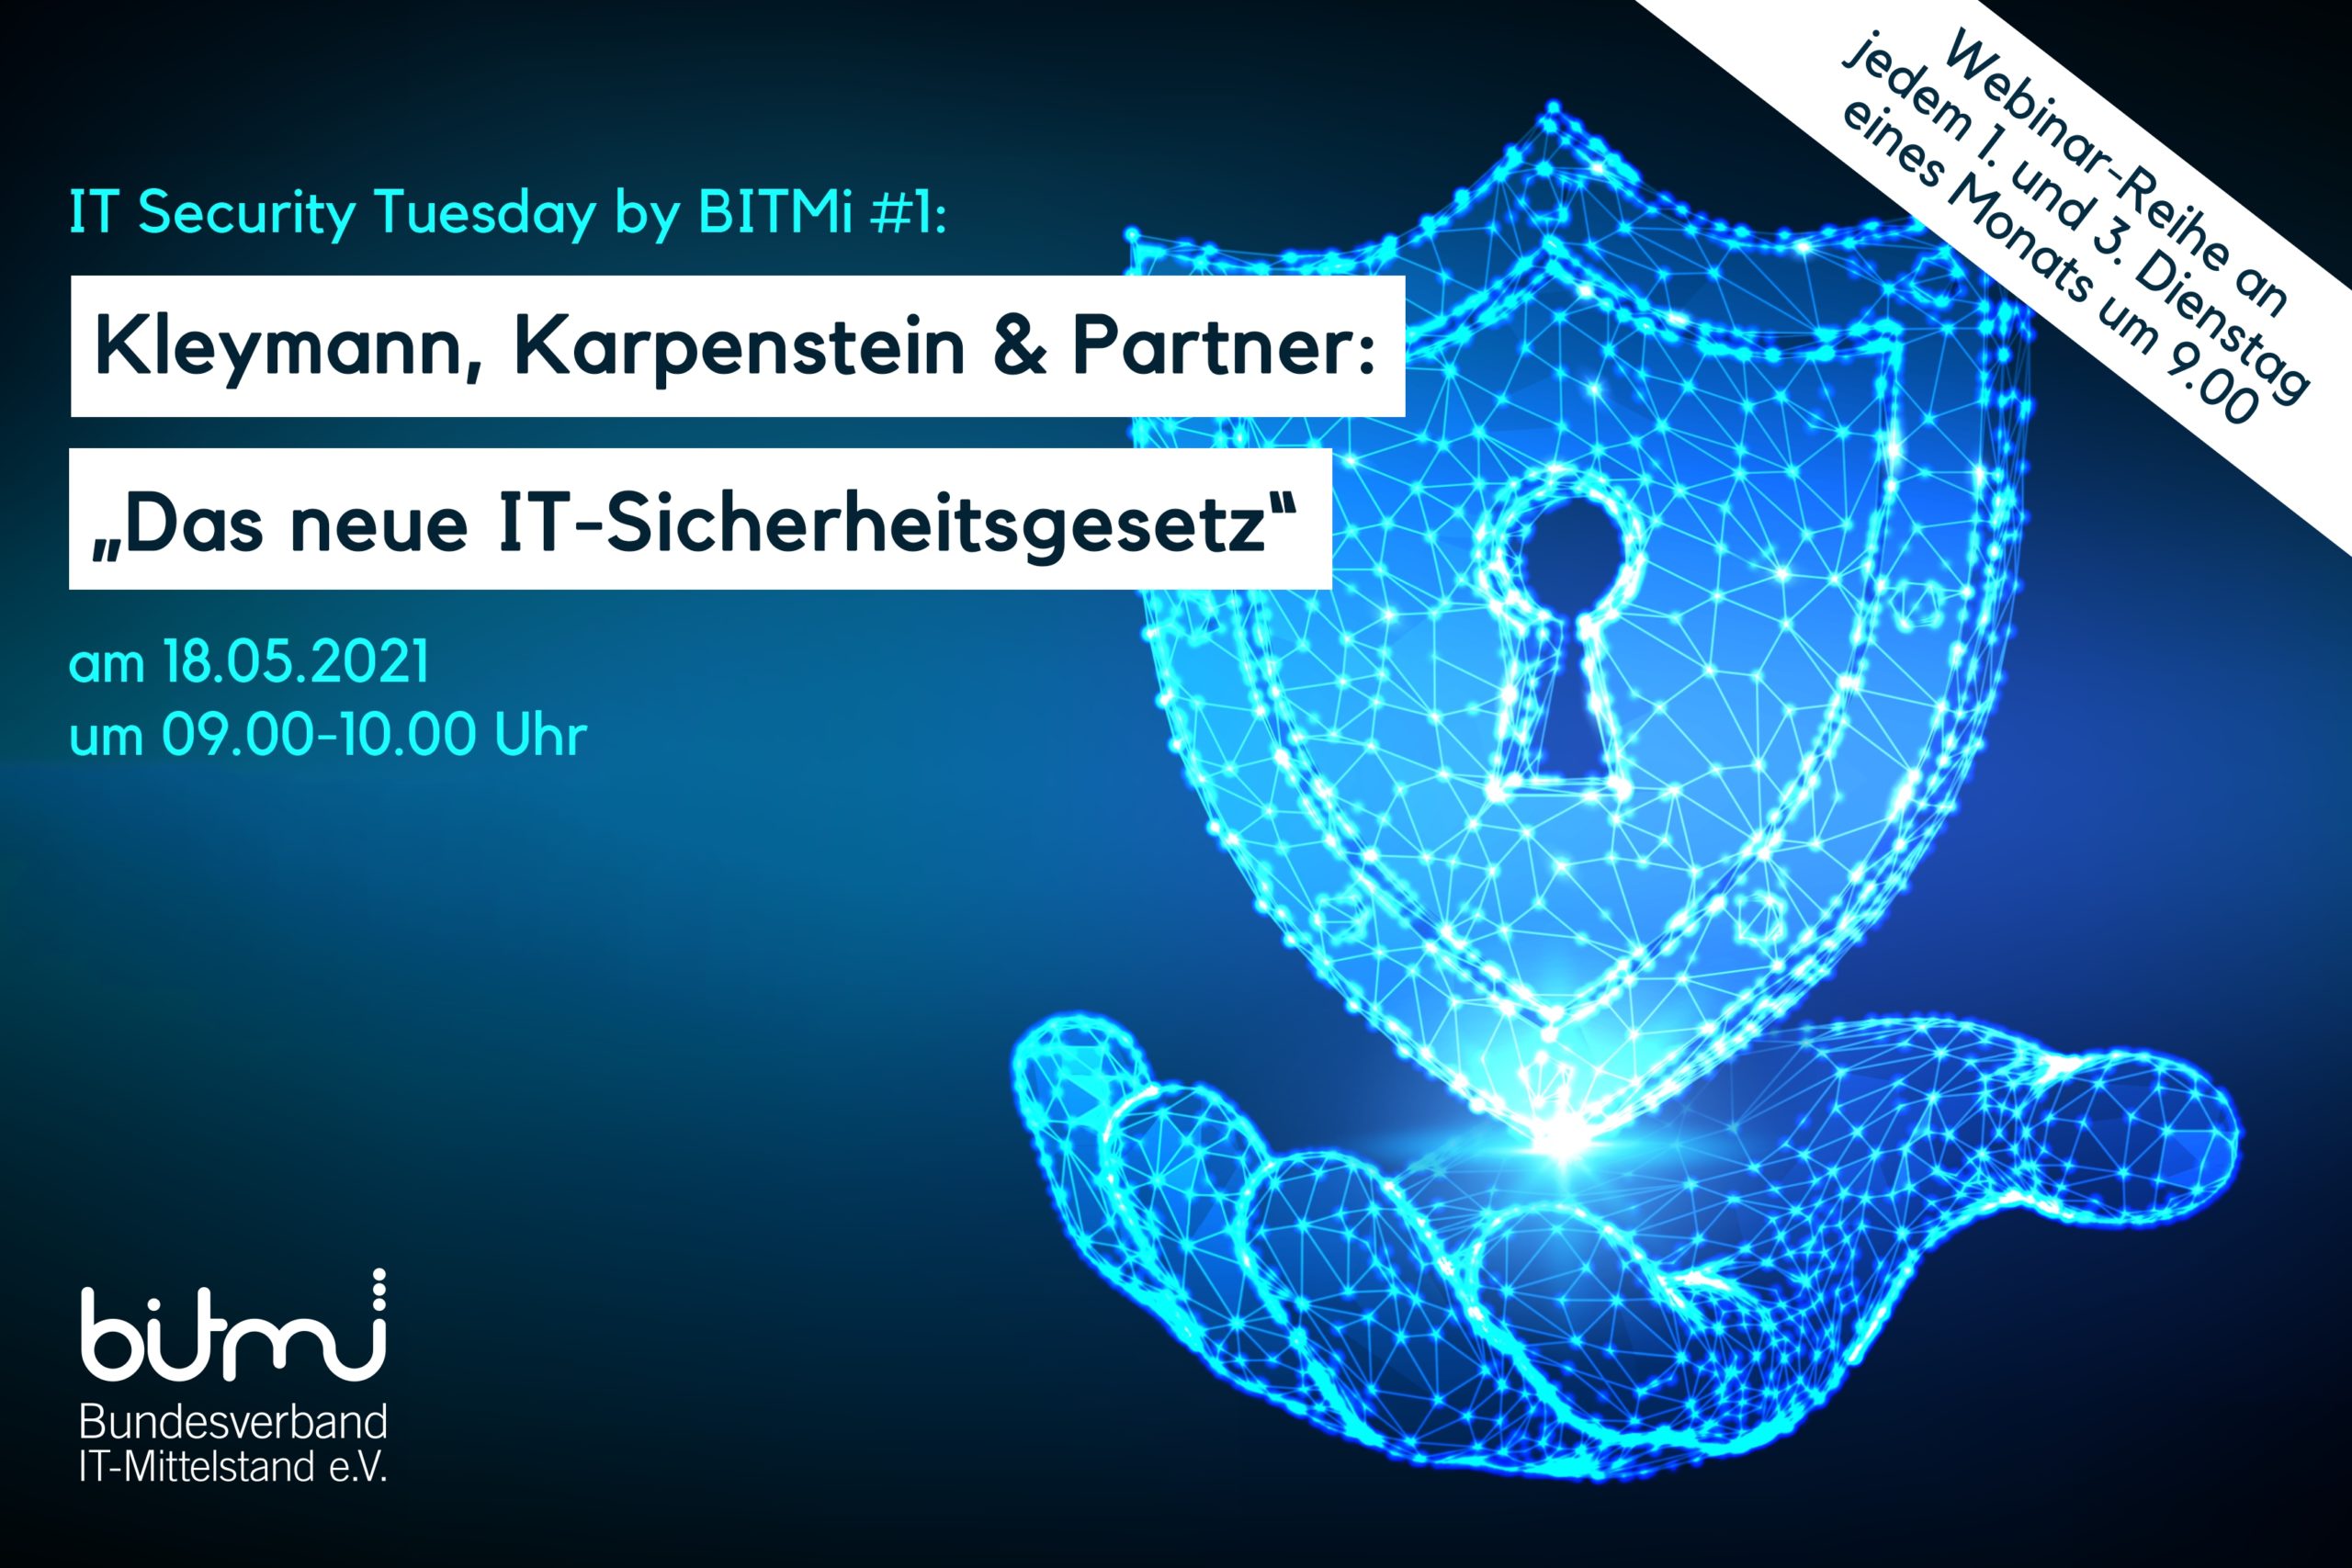 IT-Security Tuesday mit BITMi Mitglied Kleymann, Karpenstein & Partner: „Das neue IT-Sicherheitsgesetz“